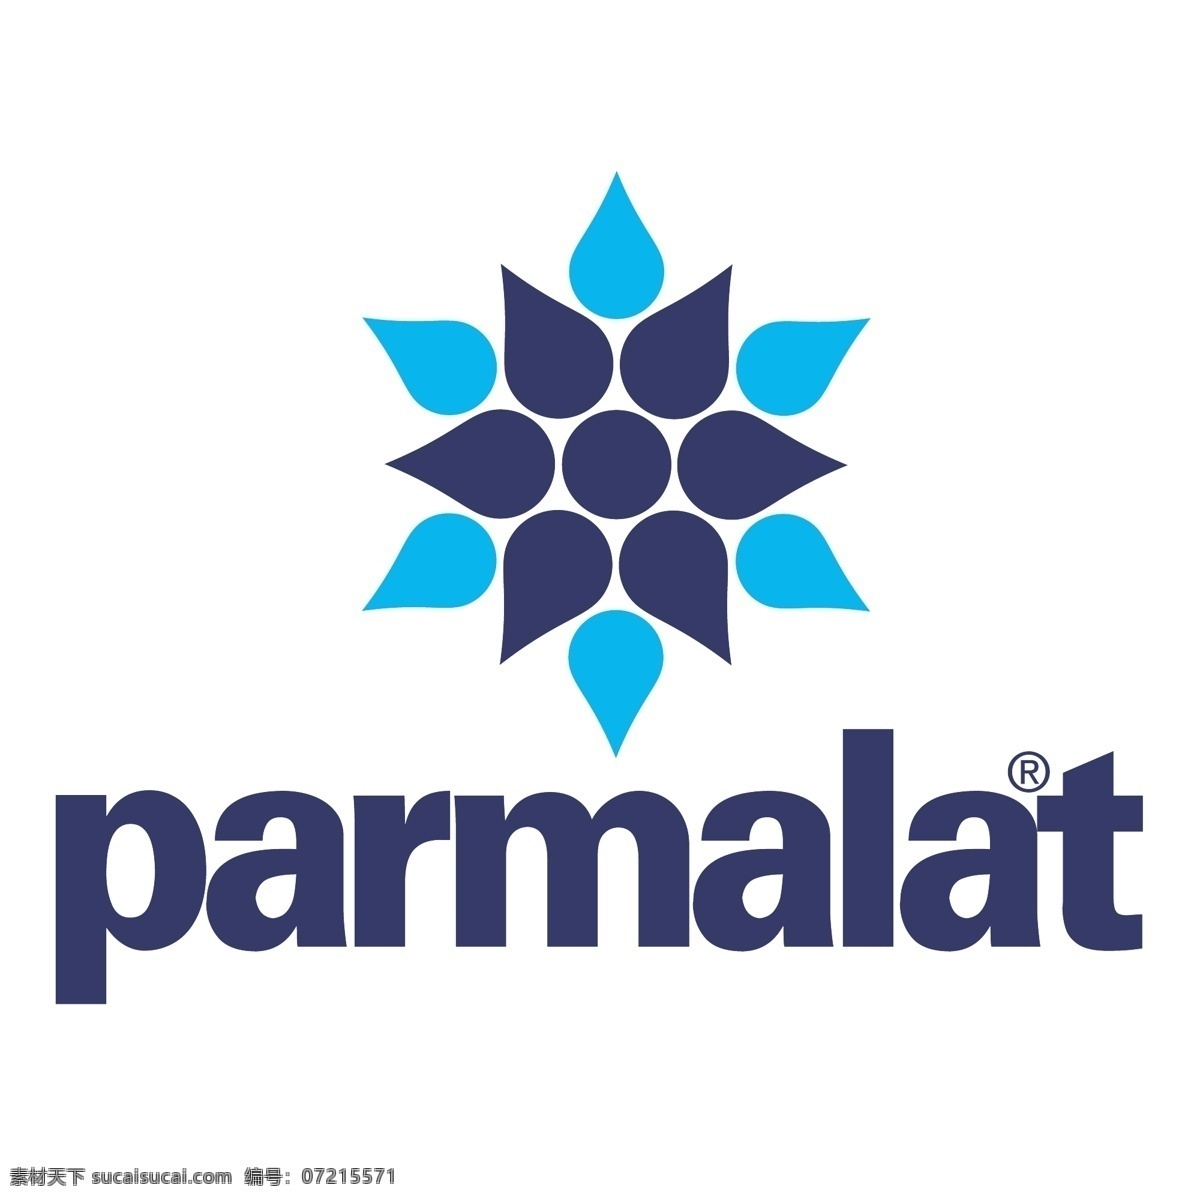 帕玛拉特公司 向量 帕玛 拉特 帕玛拉特1 白色